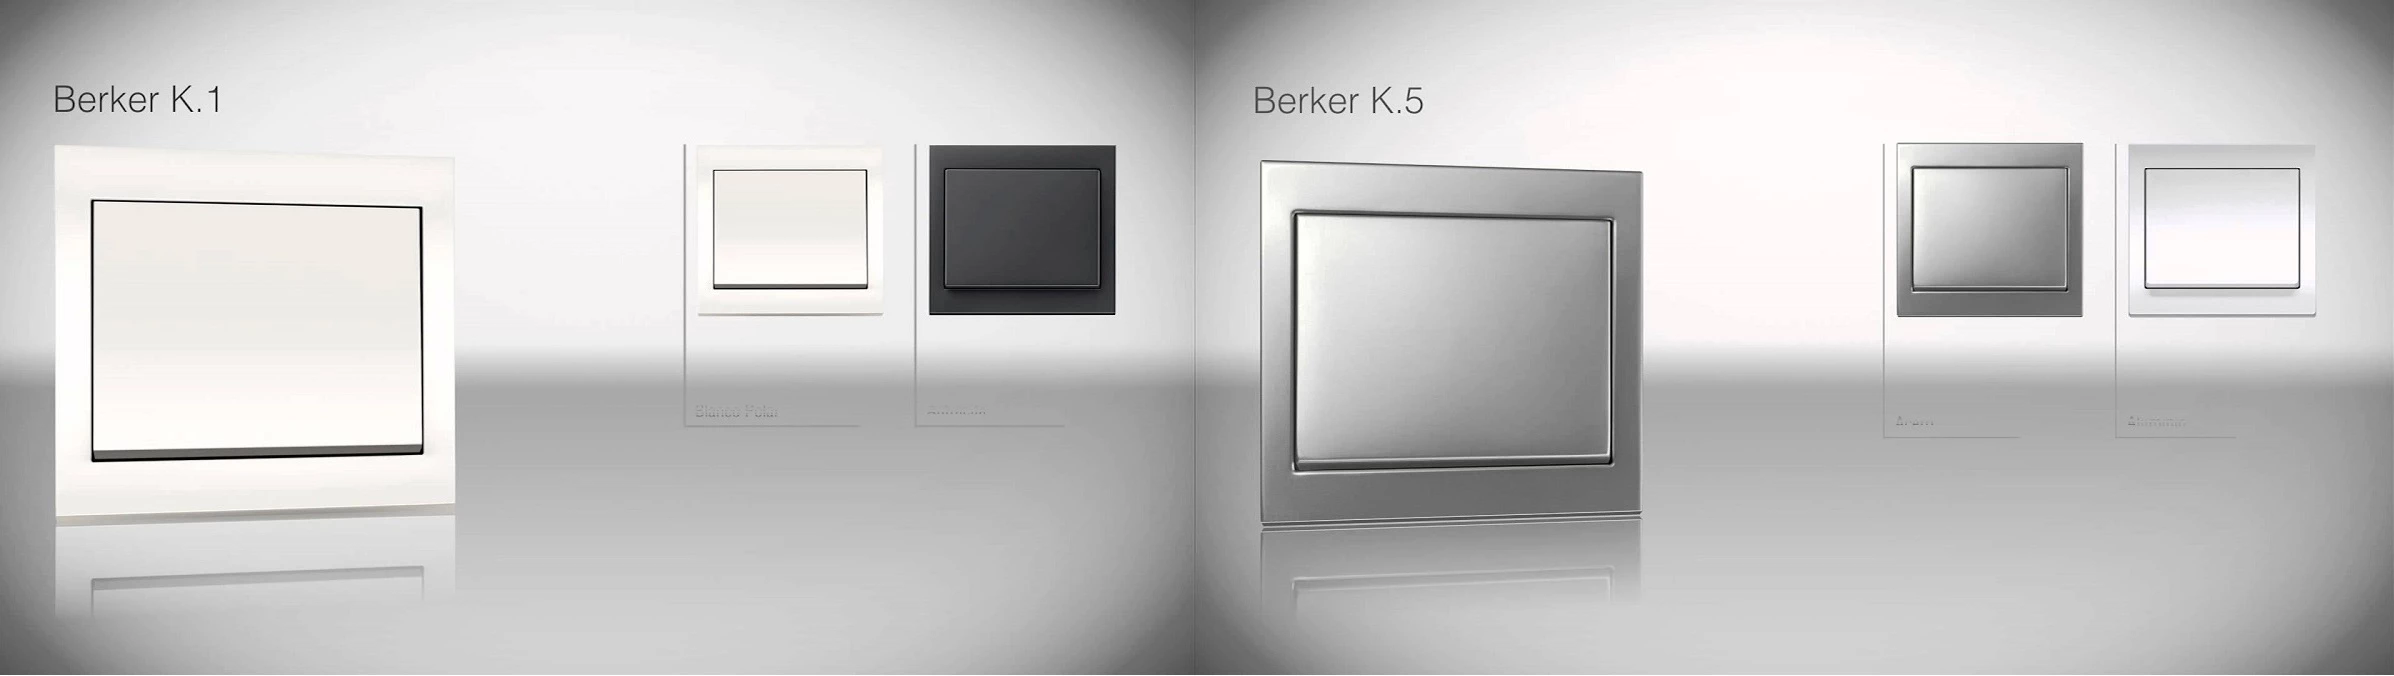 Berker K1 и K5